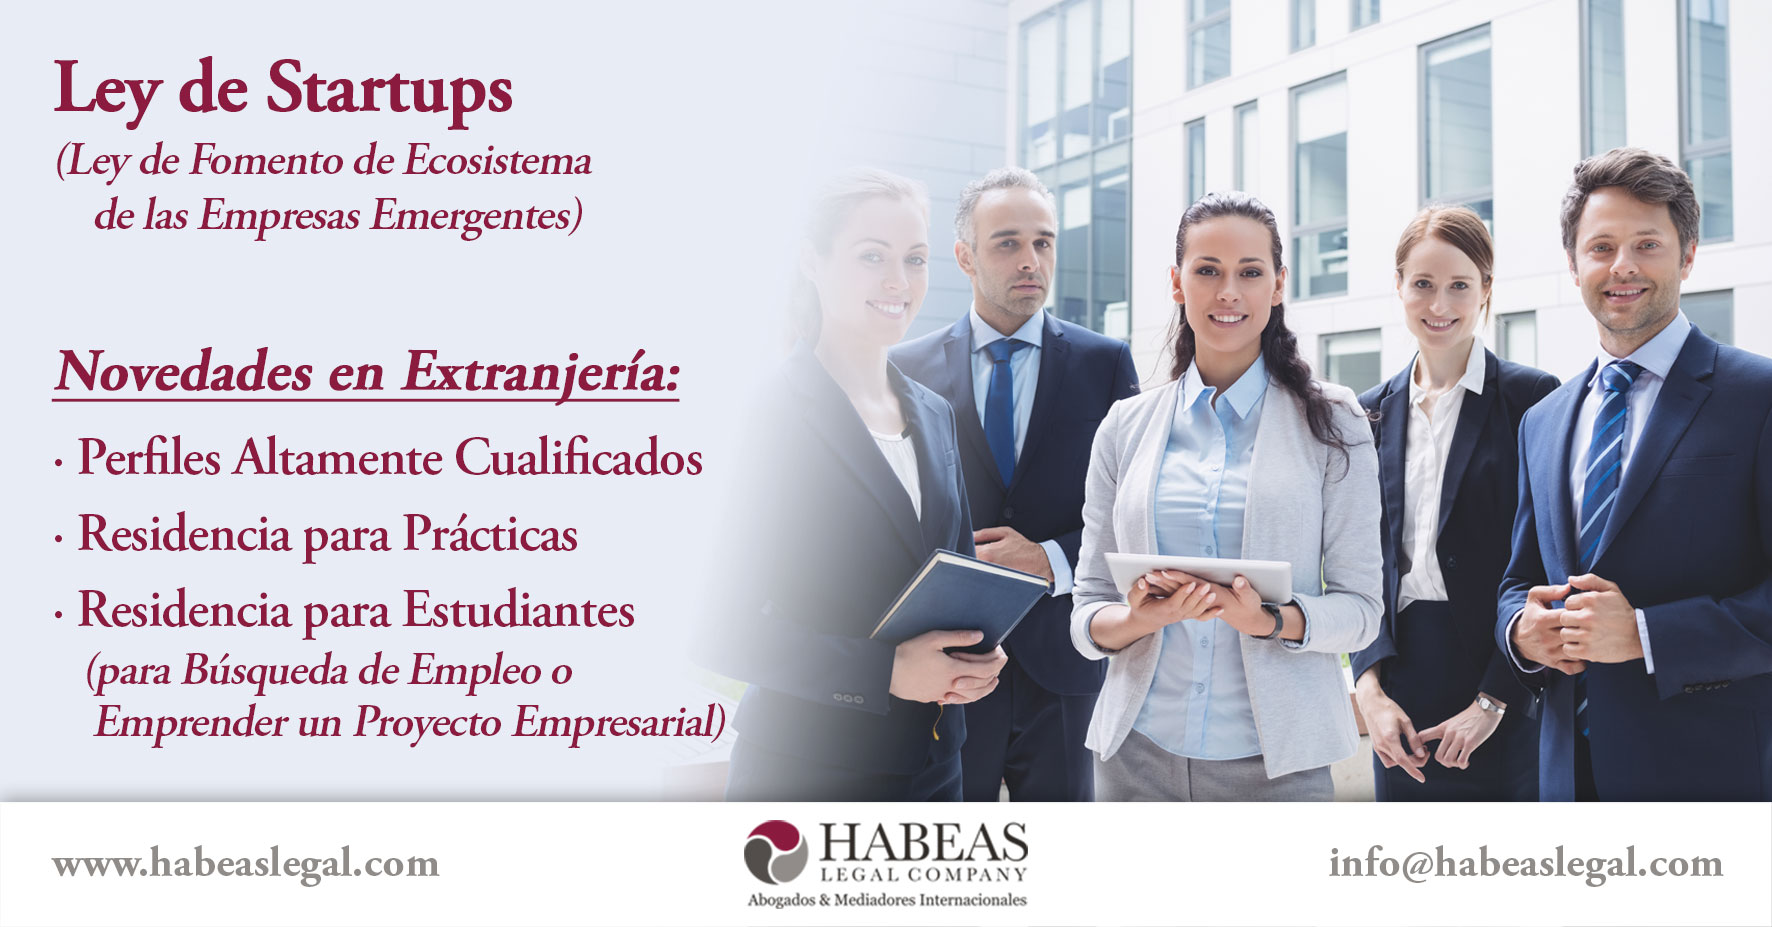 Ley de Startups Novedades Extranjeria Habeas Legal - Abogados Internacionales especializados en Extranjería, Inmigración y Laboral